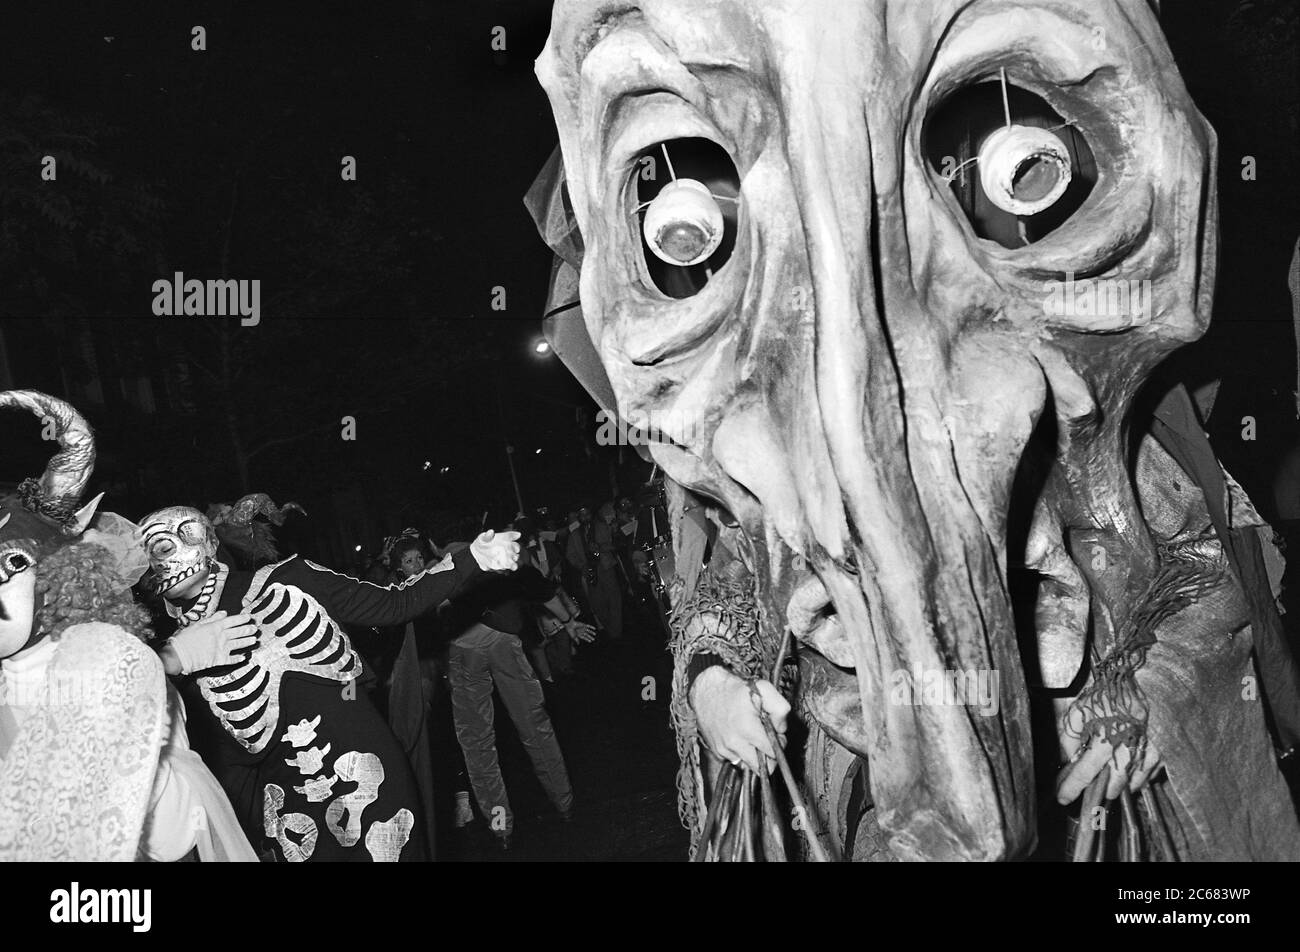 Grande marionetta fatta a mano alla Greenwich Village Halloween Parade, New York City, USA negli anni '80 fotografata con film in bianco e nero di notte. Foto Stock